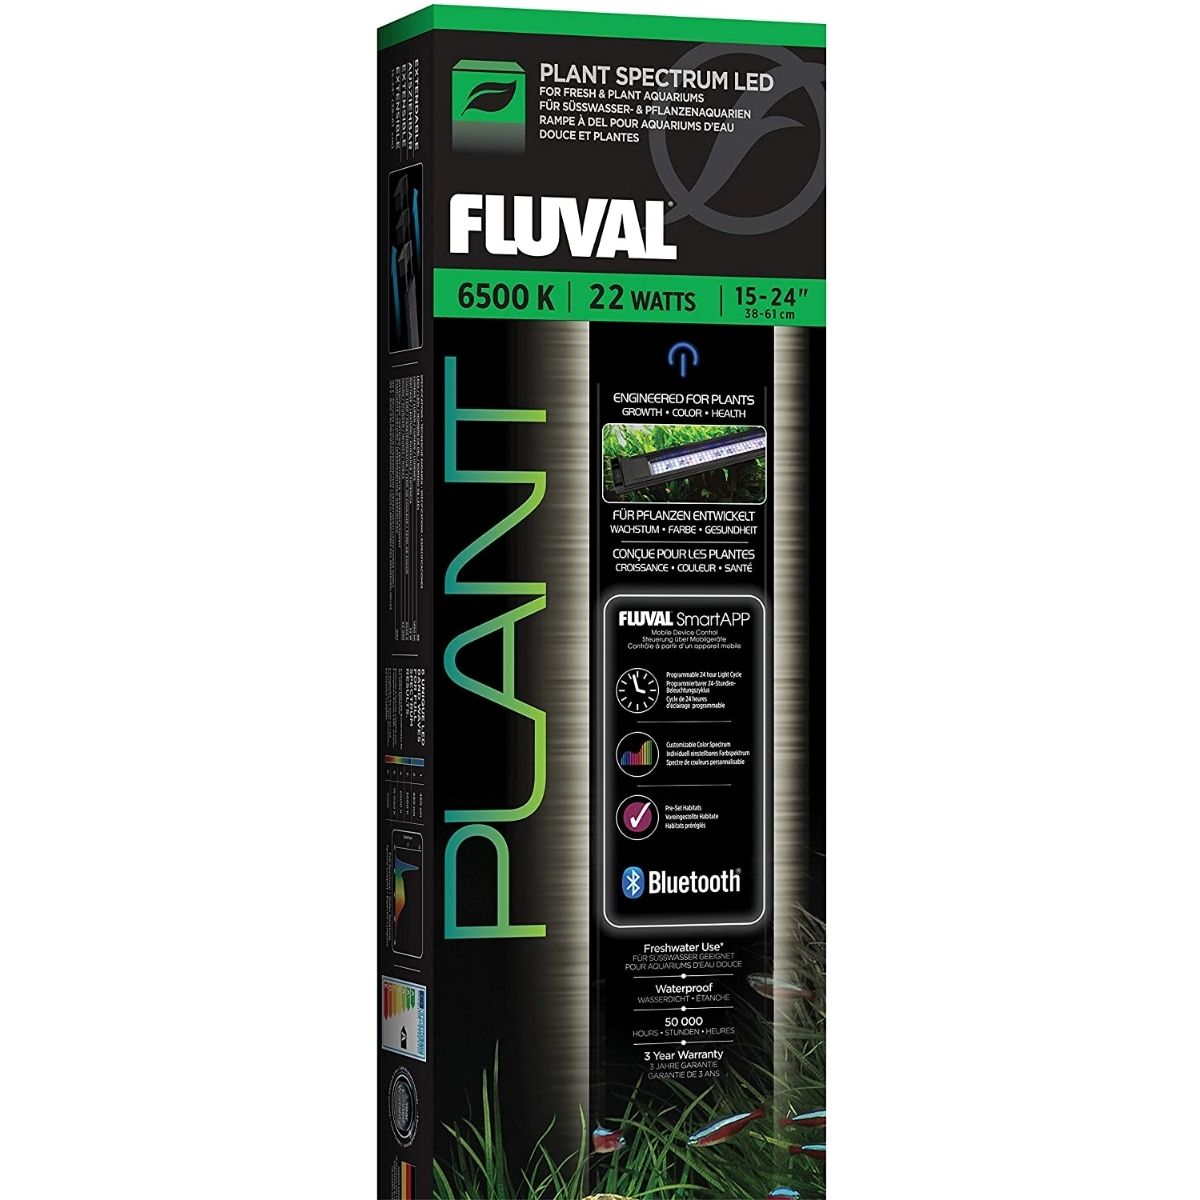 The Best Gift for Aquarium Lovers: Fluval Plant 3.0 Planted Aquarium Light